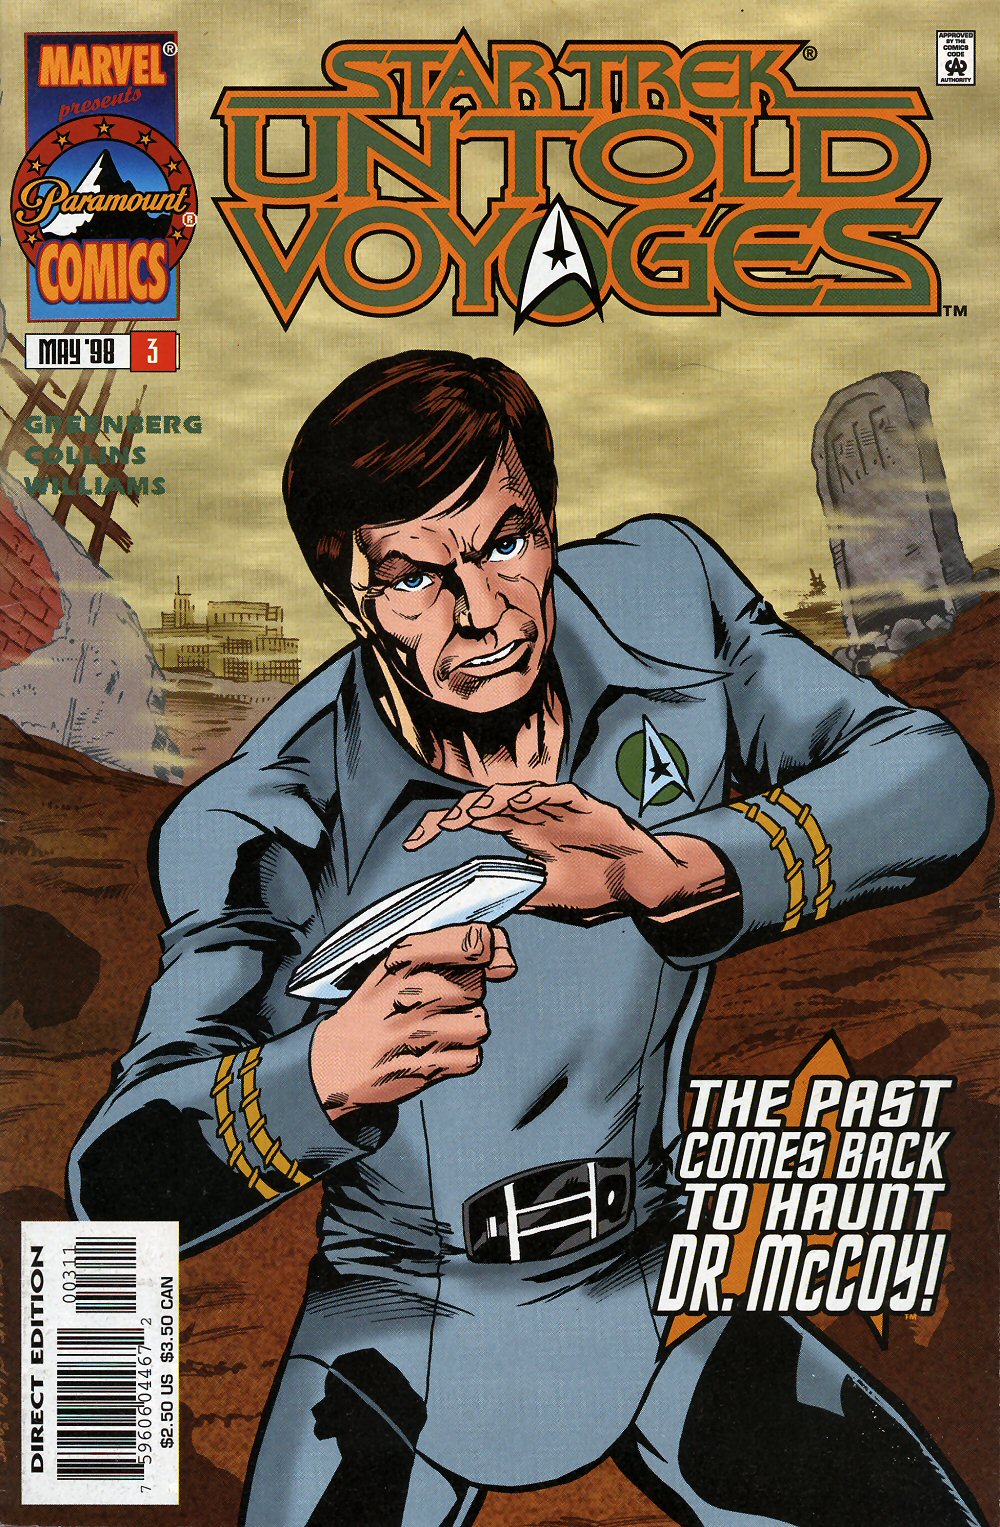 Star Trek: Untold Voyages issue 3 - Page 1